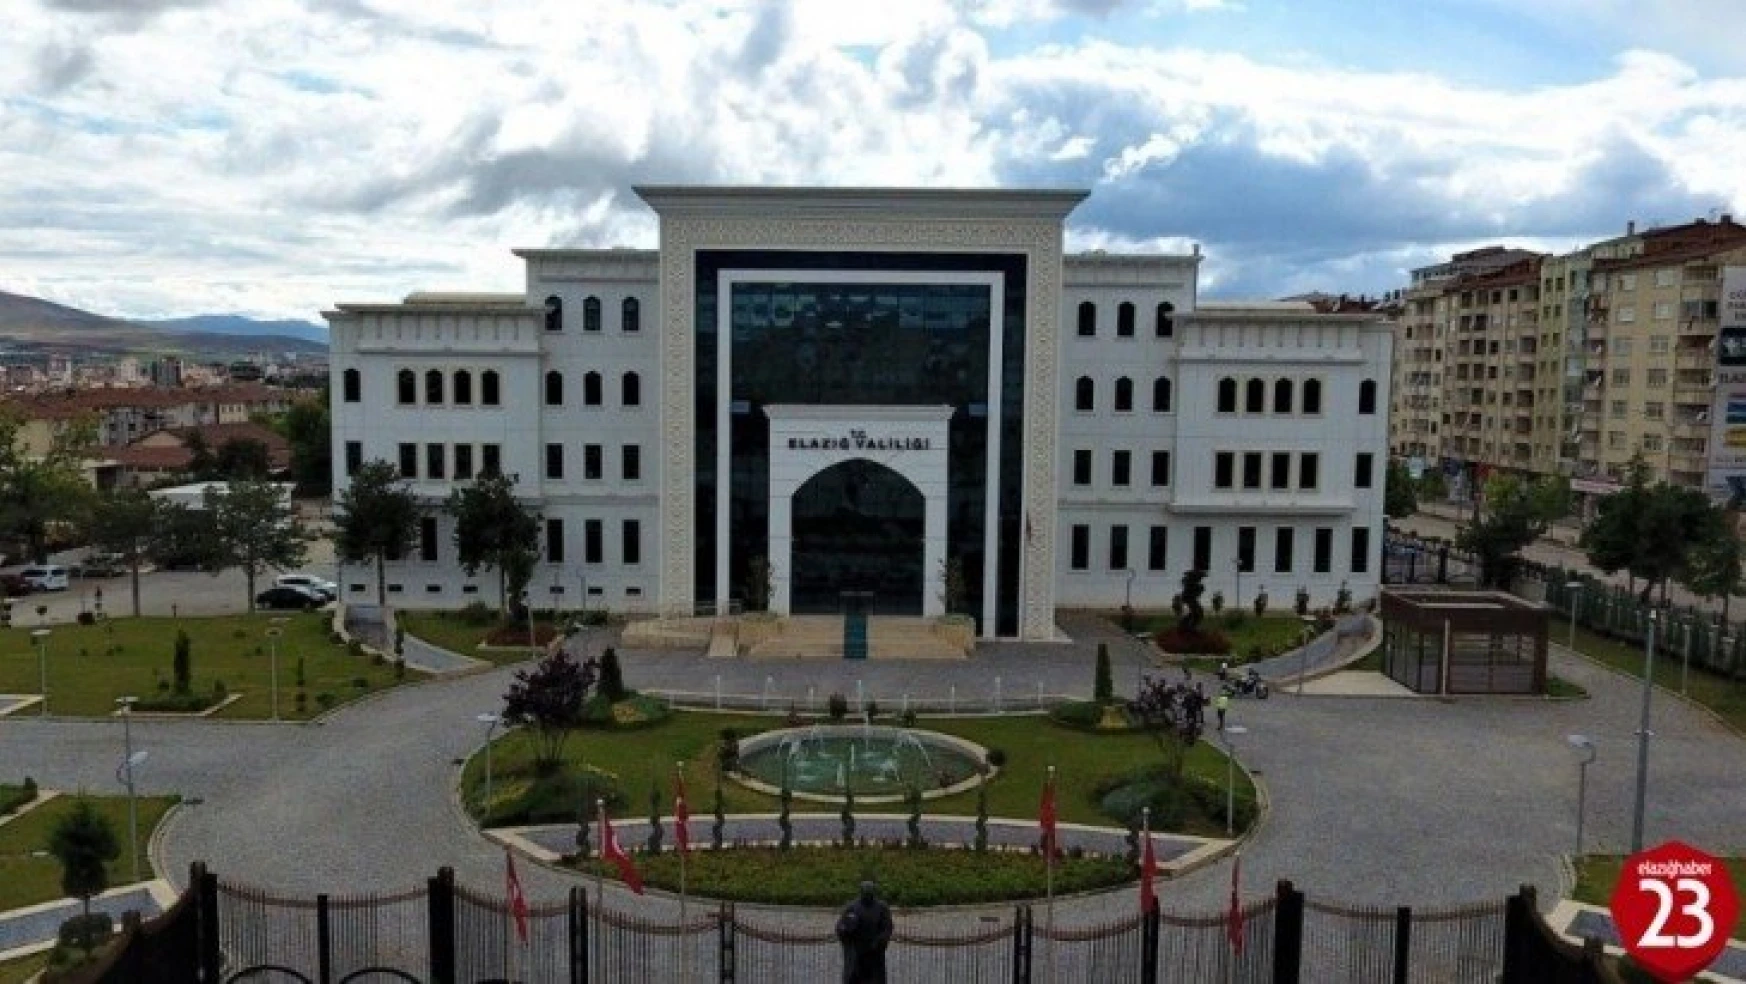 Elazığ'da kamu kurumlarına girişte HES kodu zorunluluğu